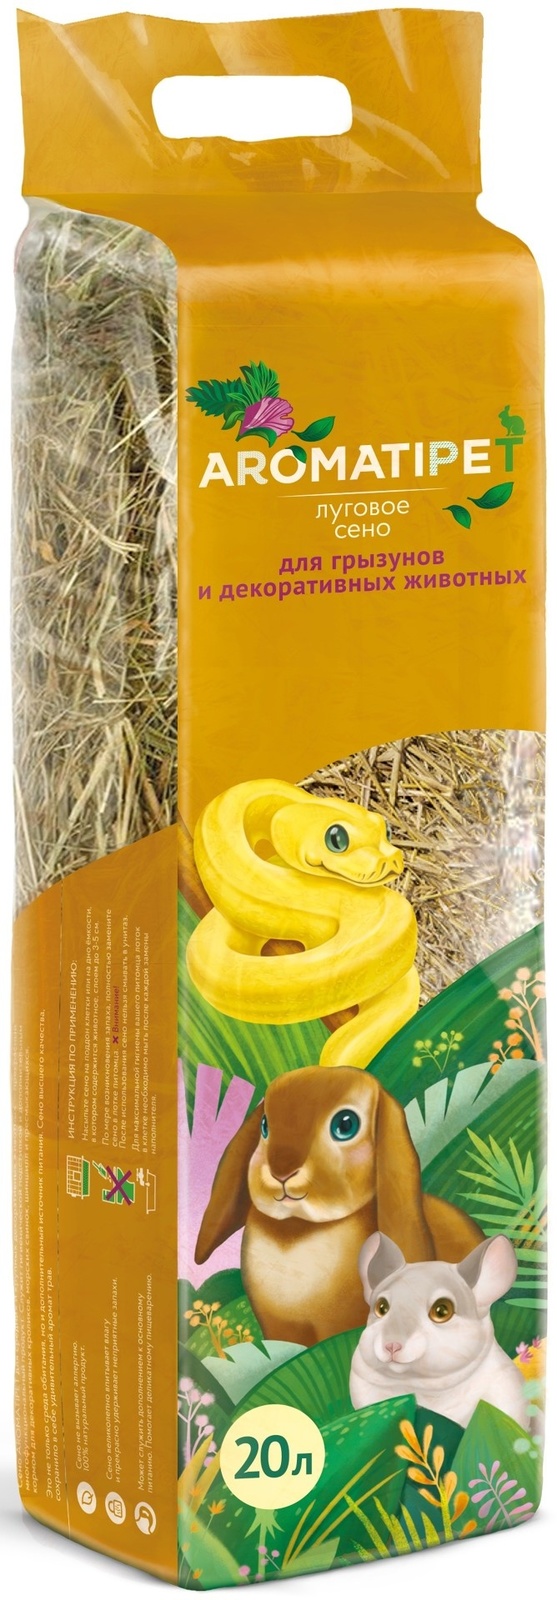 AromatiPet AromatiPet сено луговое для грызунов и декоративных животных, 20л (600 г) цена и фото